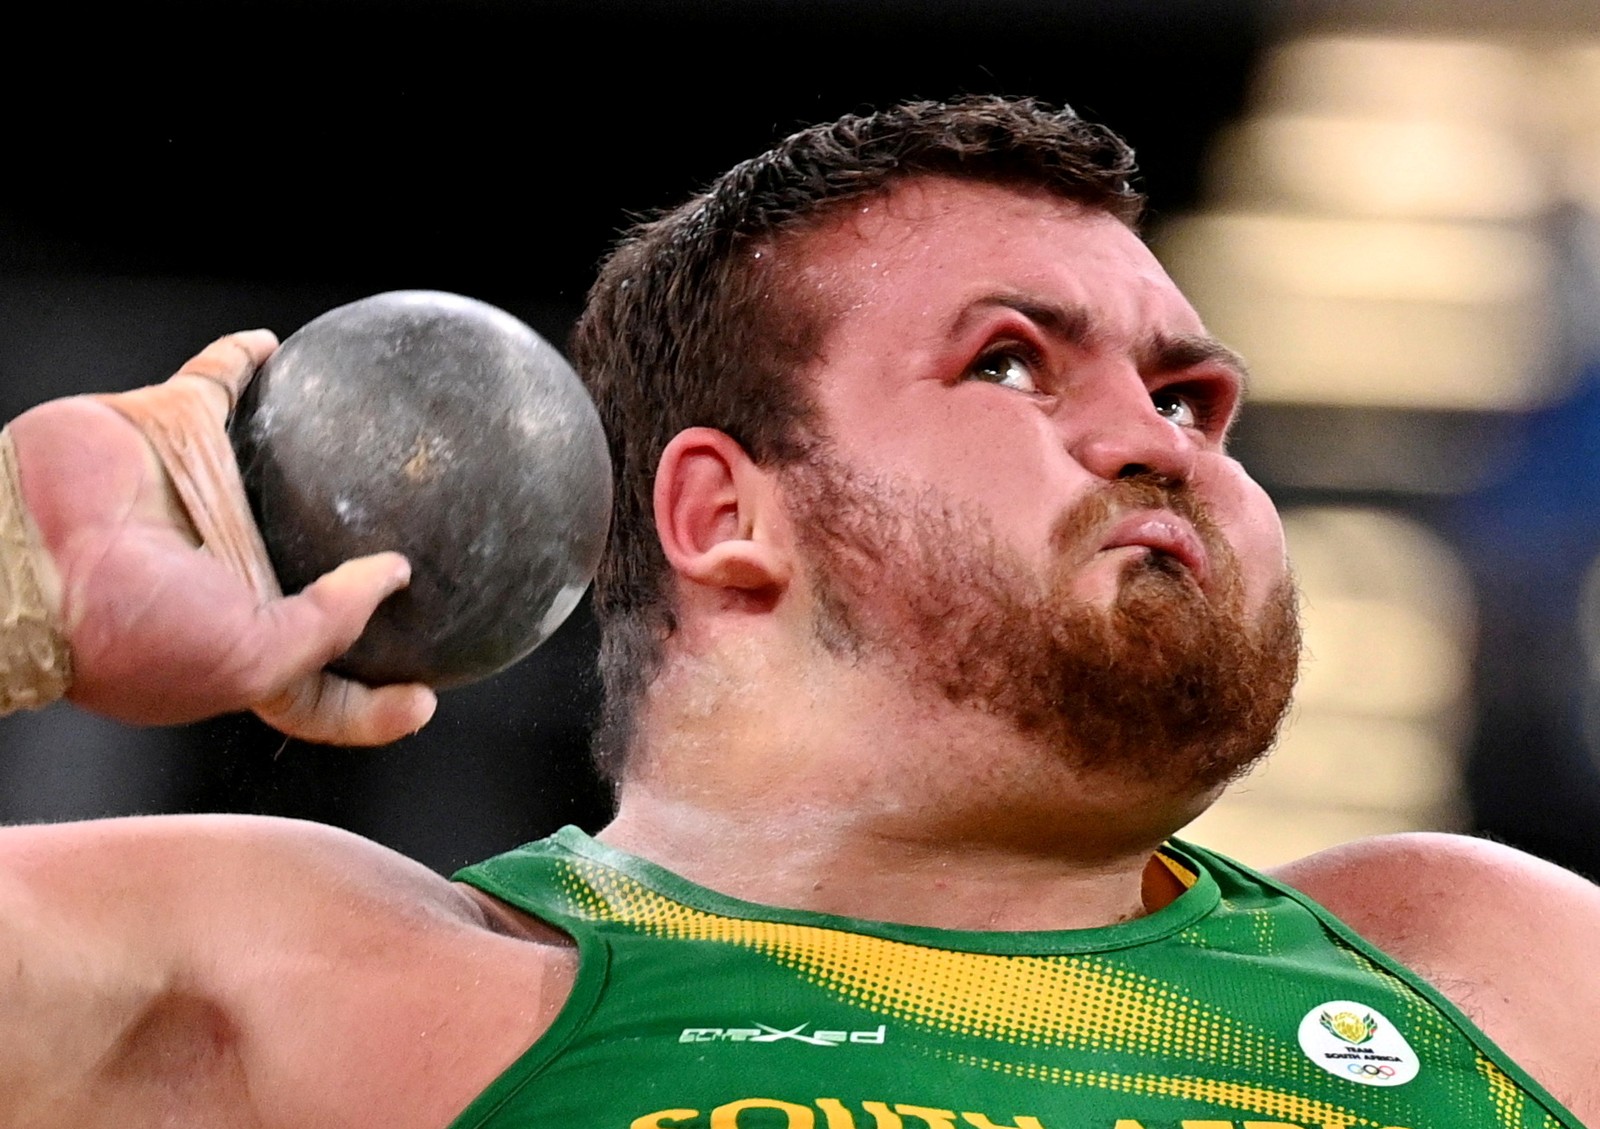 Força da rotação para o arremesso de peso chega a deformar o semblante do atleta Kyle Blignaut, da África do SulREUTERS